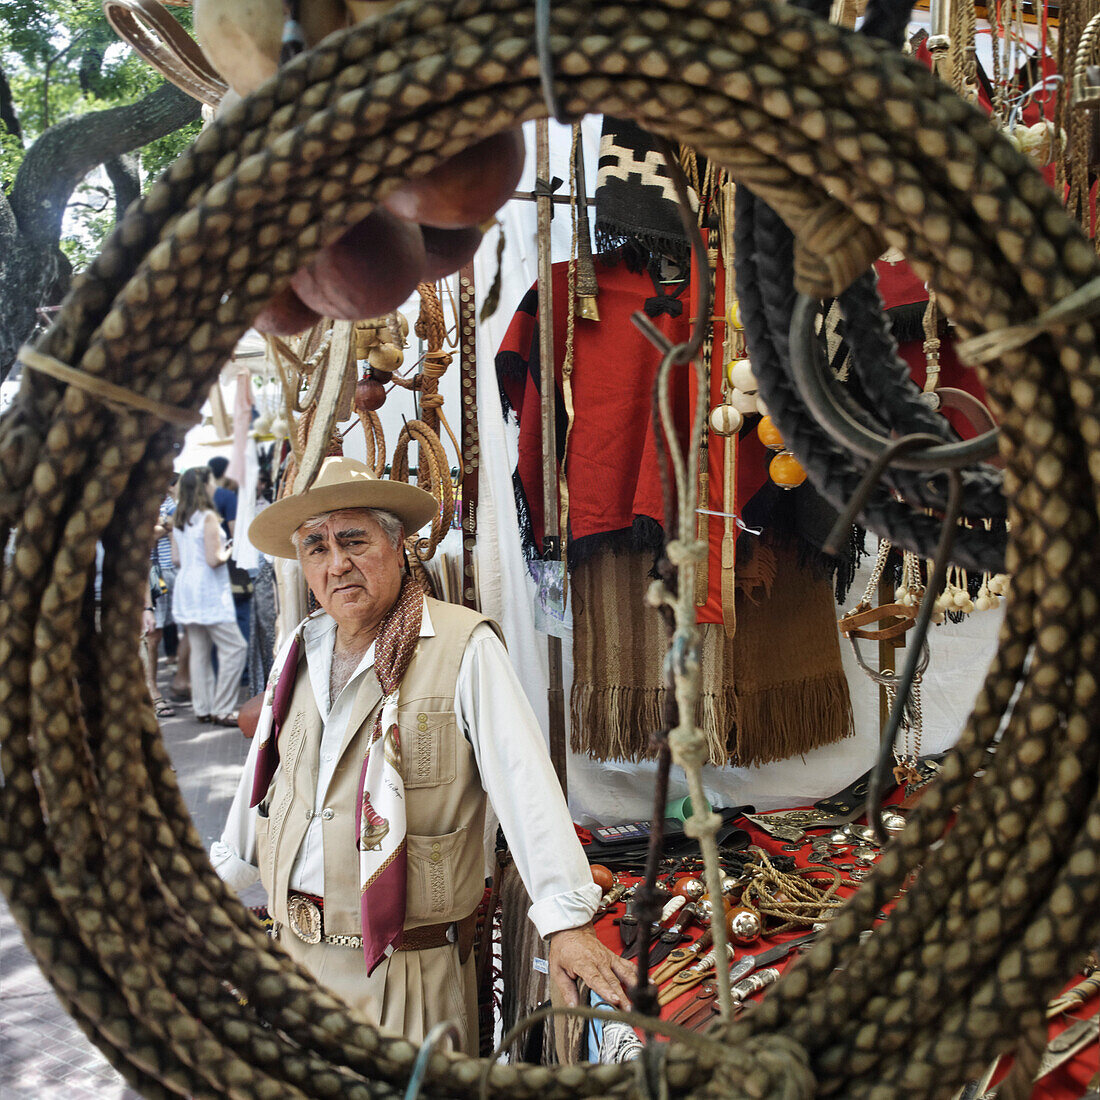 Gaucho mit traditioneller Kleidung, Marktstand mit Lederwaren, Plaza Dorrego, San Telmo, Buenos Aires, Argentinien